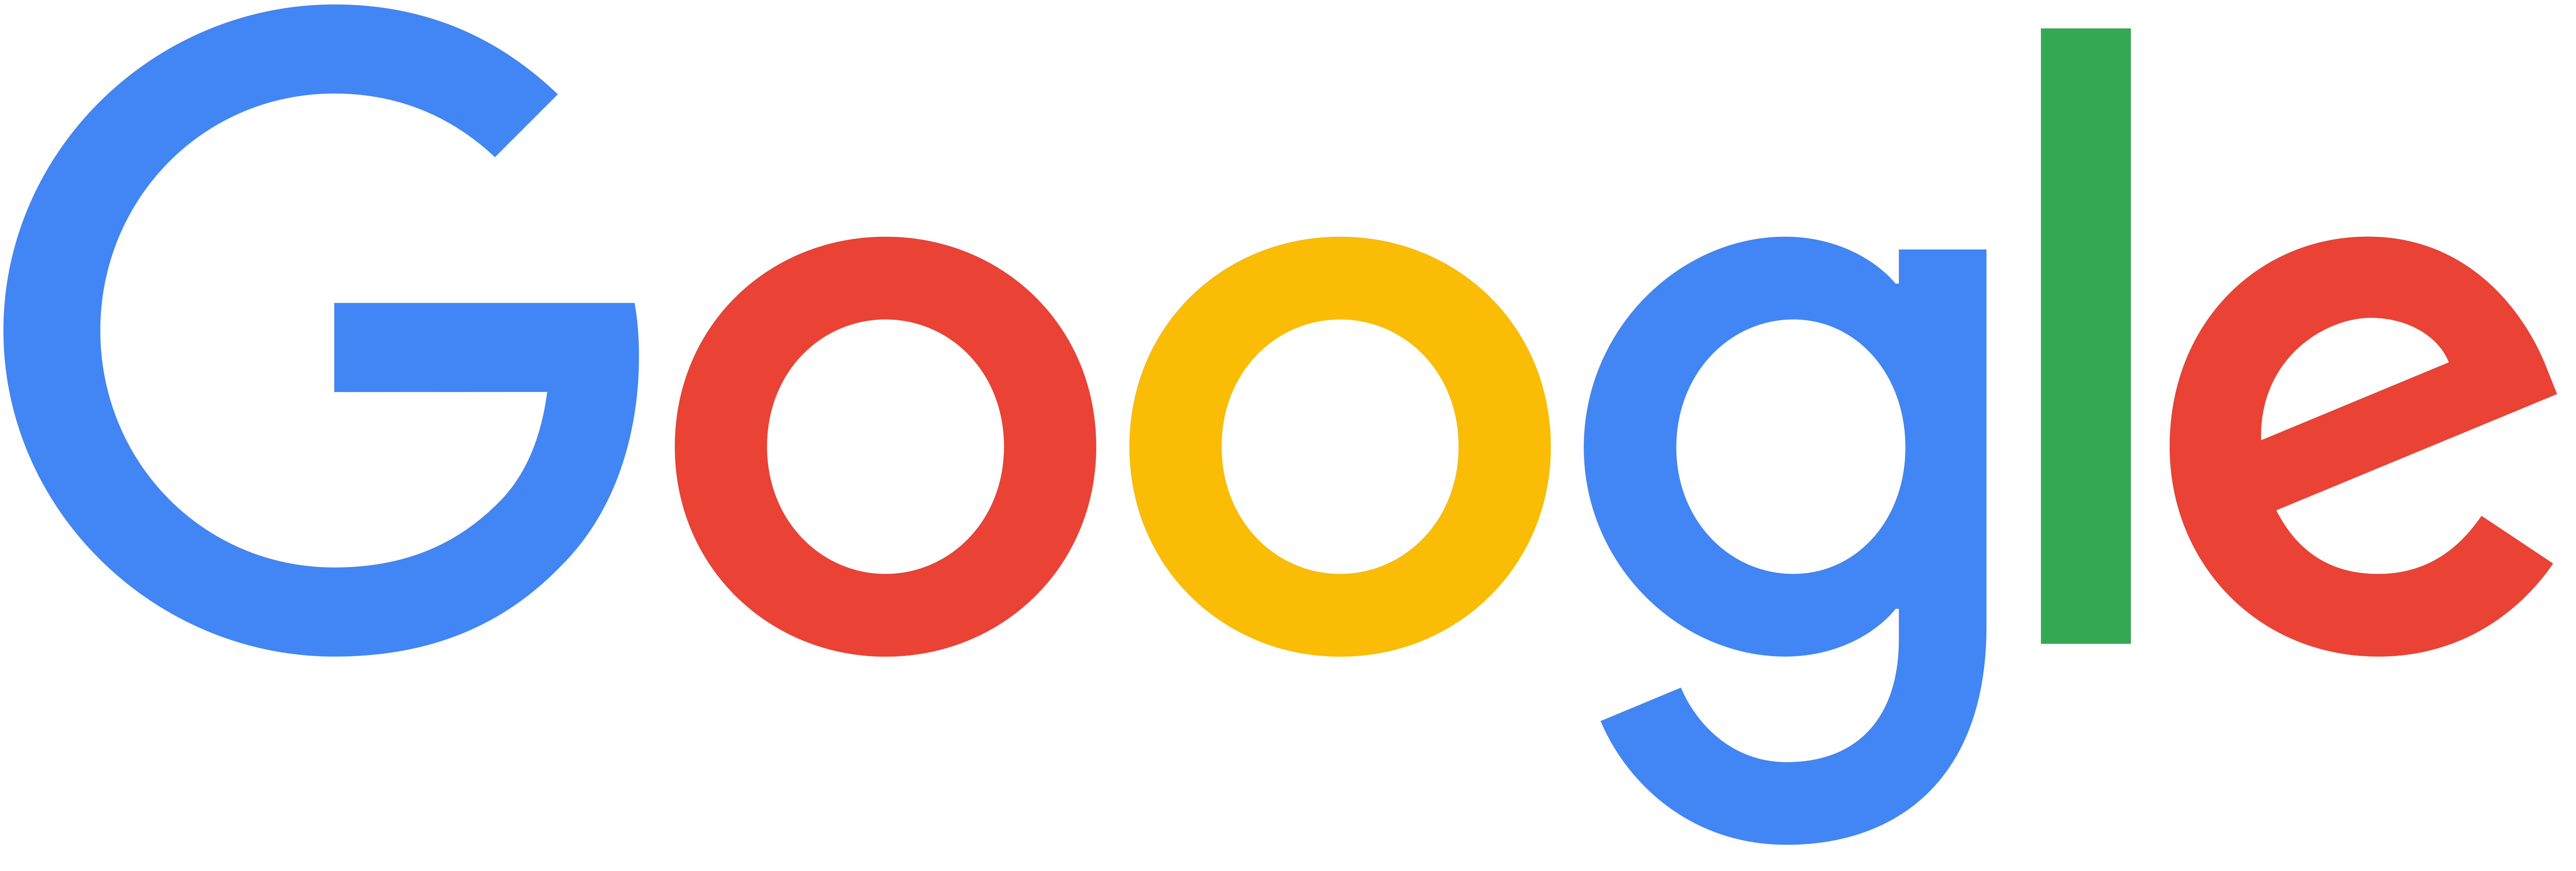 Google logo 2015 png. Image purepng free transparent